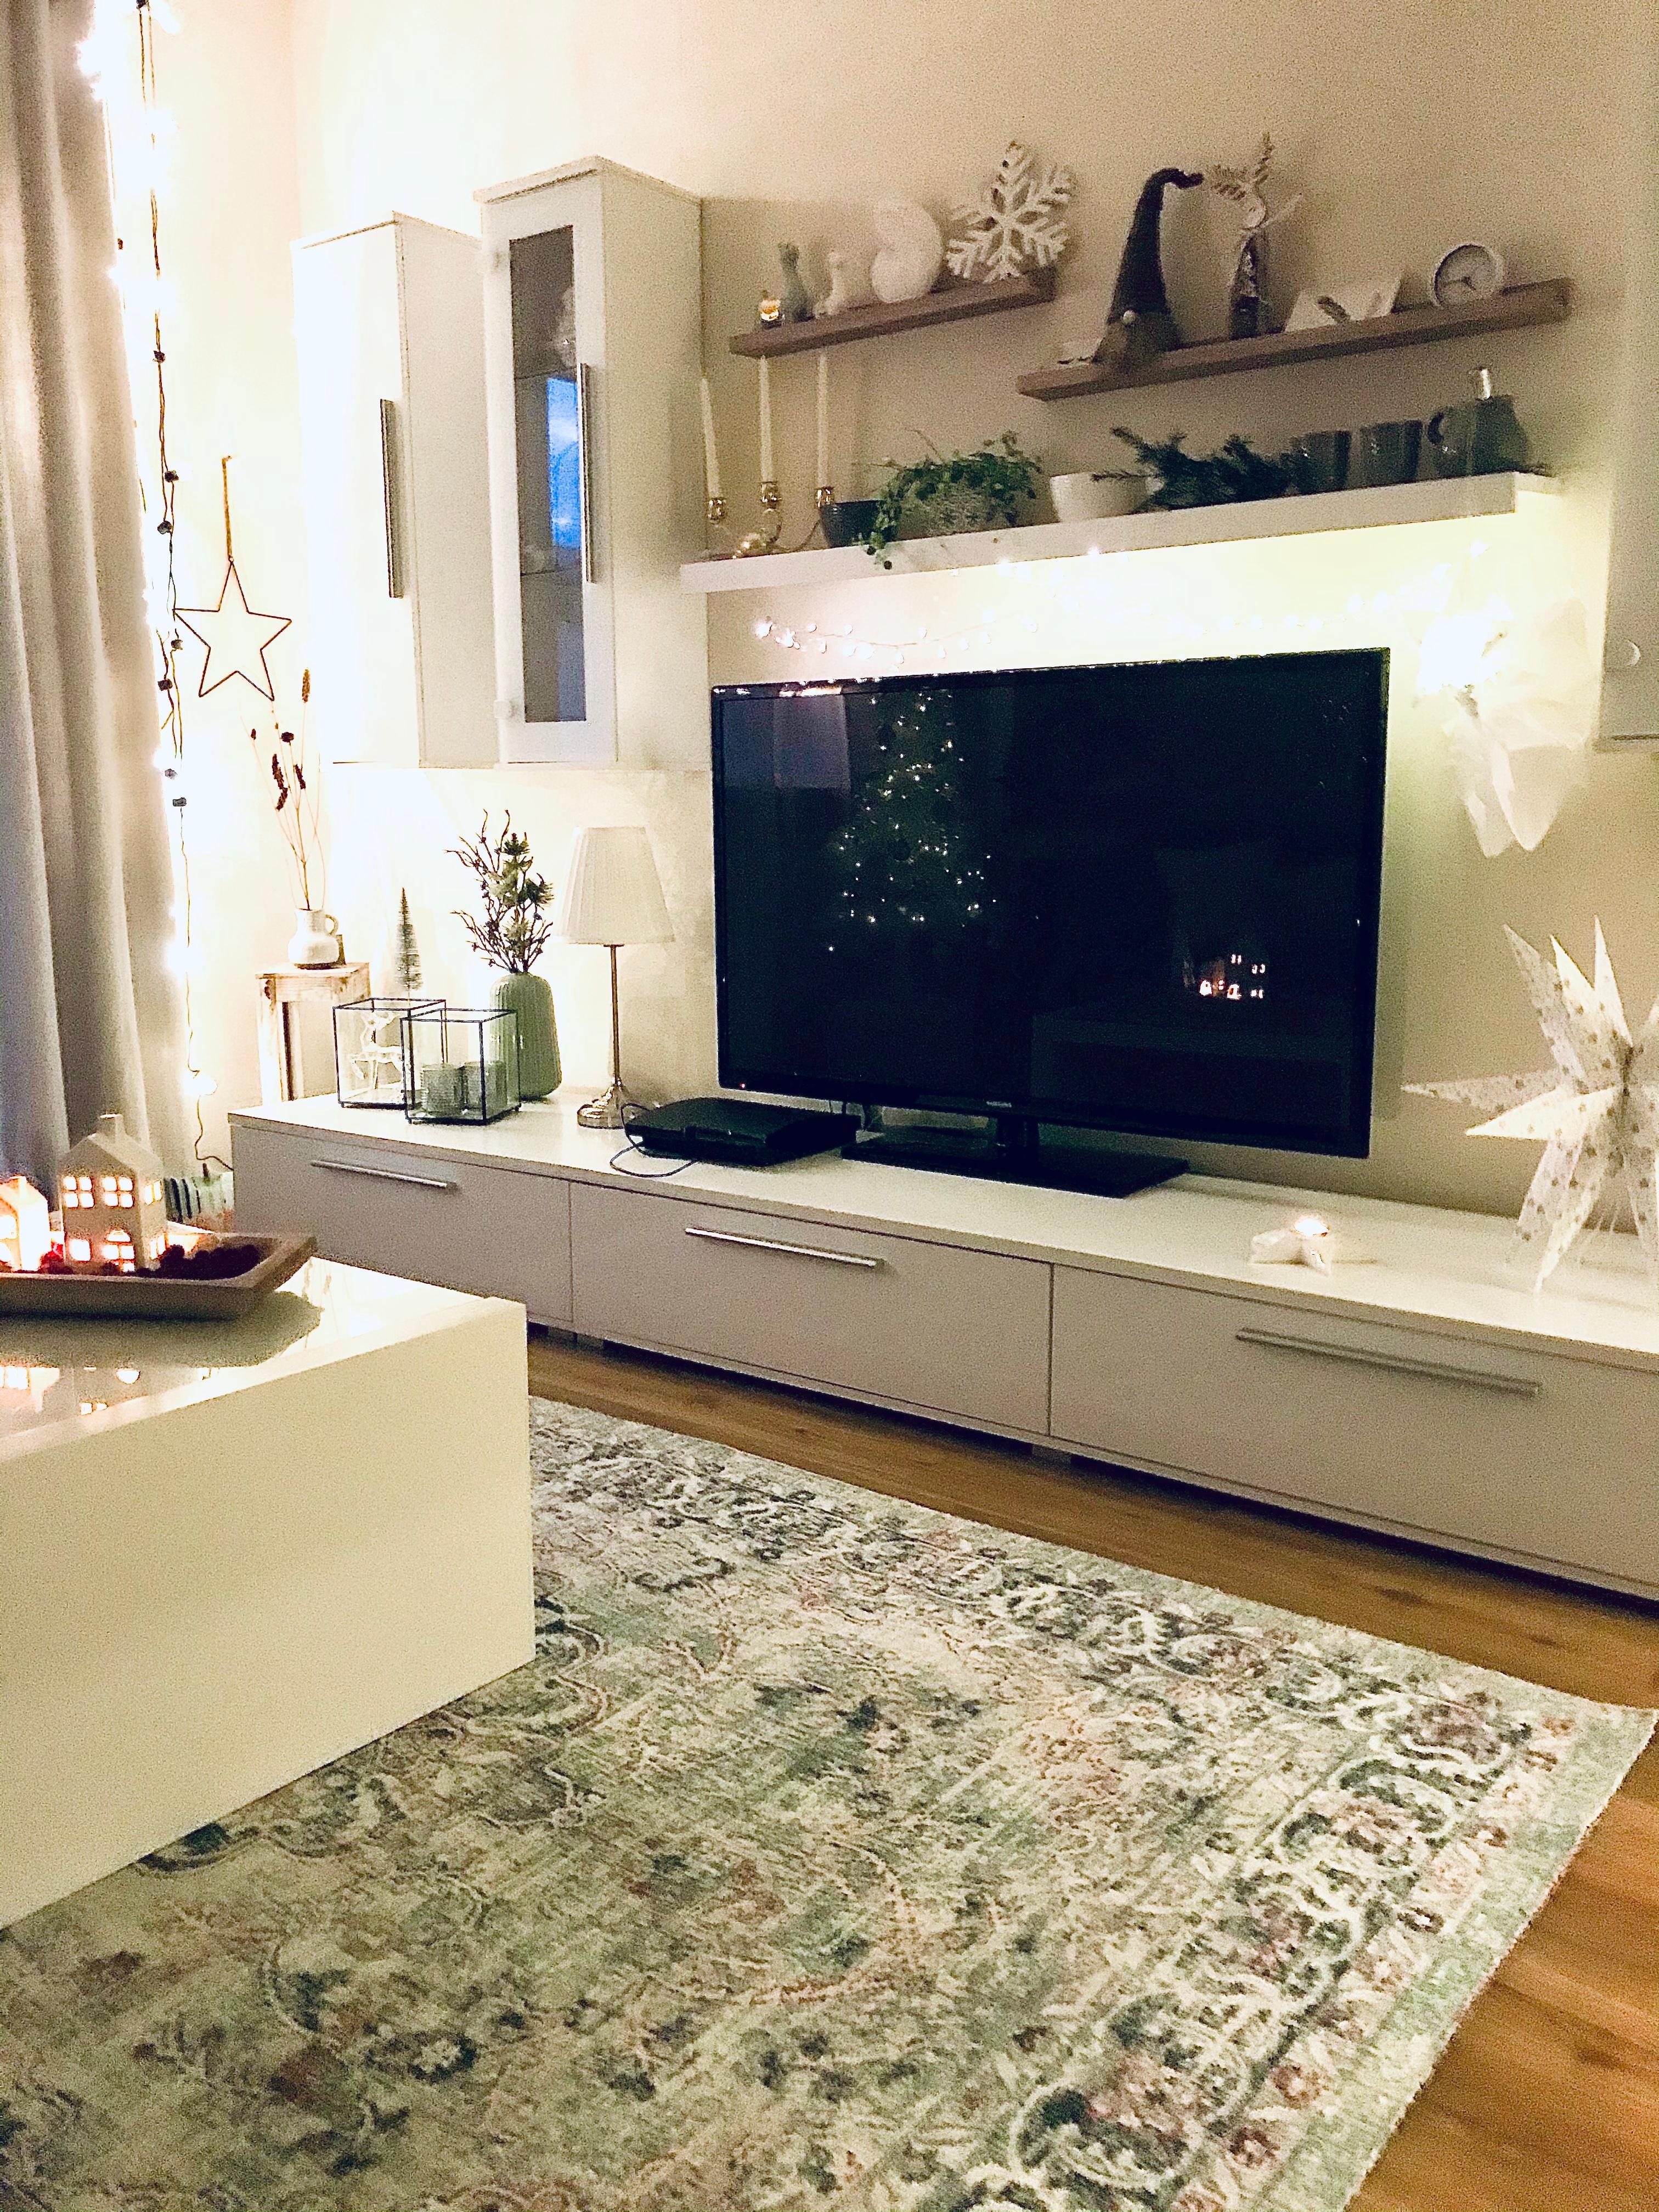 Nun wird es ruhig zuhause!
#cozytime #weihnachtsbeleuchtung 

Zeit zu zweit 🤍